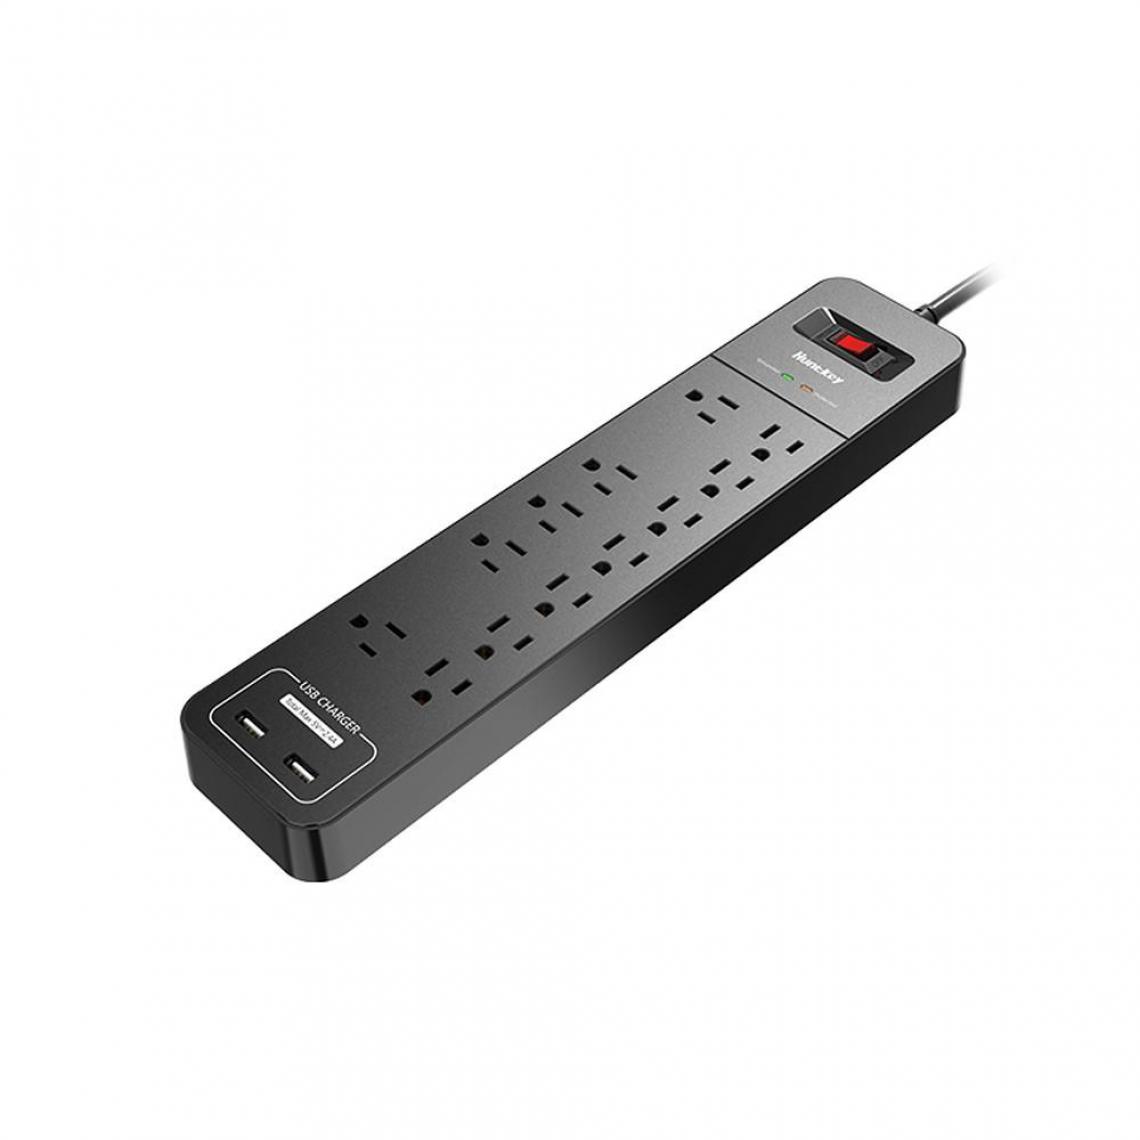 Justgreenbox - Multiprise Prise domestique durable avec 12 prises secteur 2 ports de charge USB-A Protecteur de surtension Norme américaine - T6112211959061 - Ardoises et tableaux